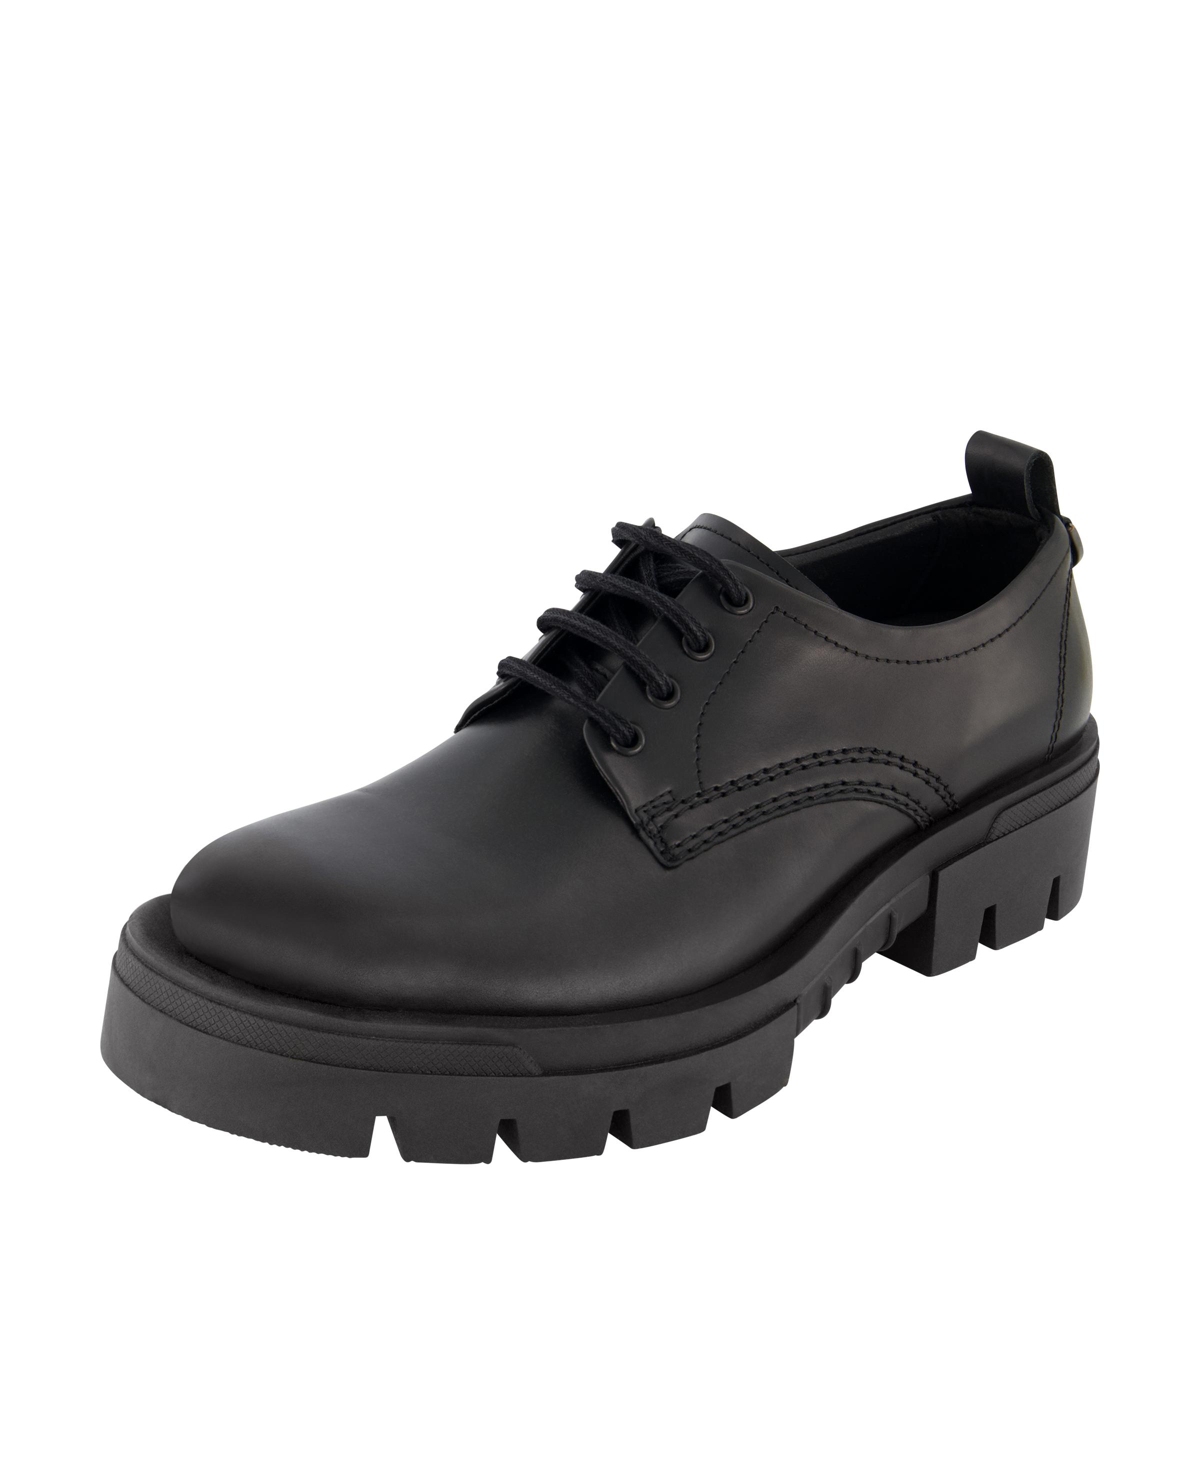 Men's Leather Plain Toe Derby On Lug Sole Shoes - Black